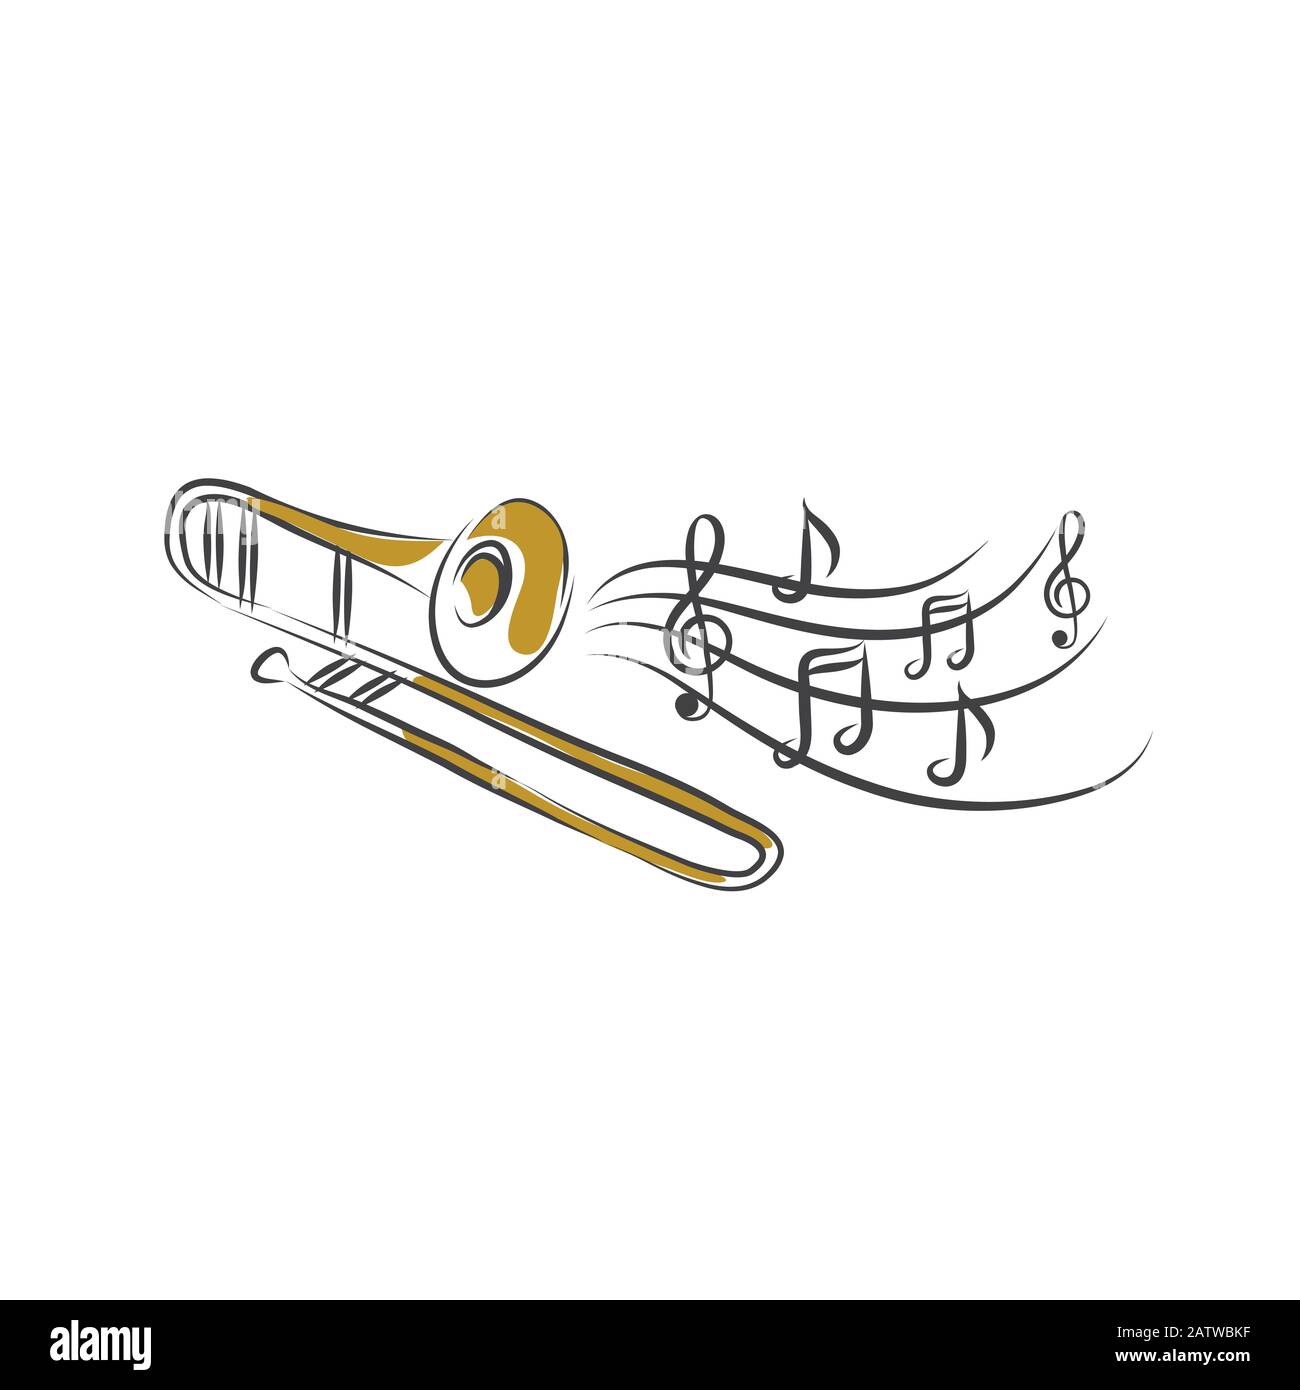 Juguete de trompeta ilustración del vector. Ilustración de feliz - 221316122